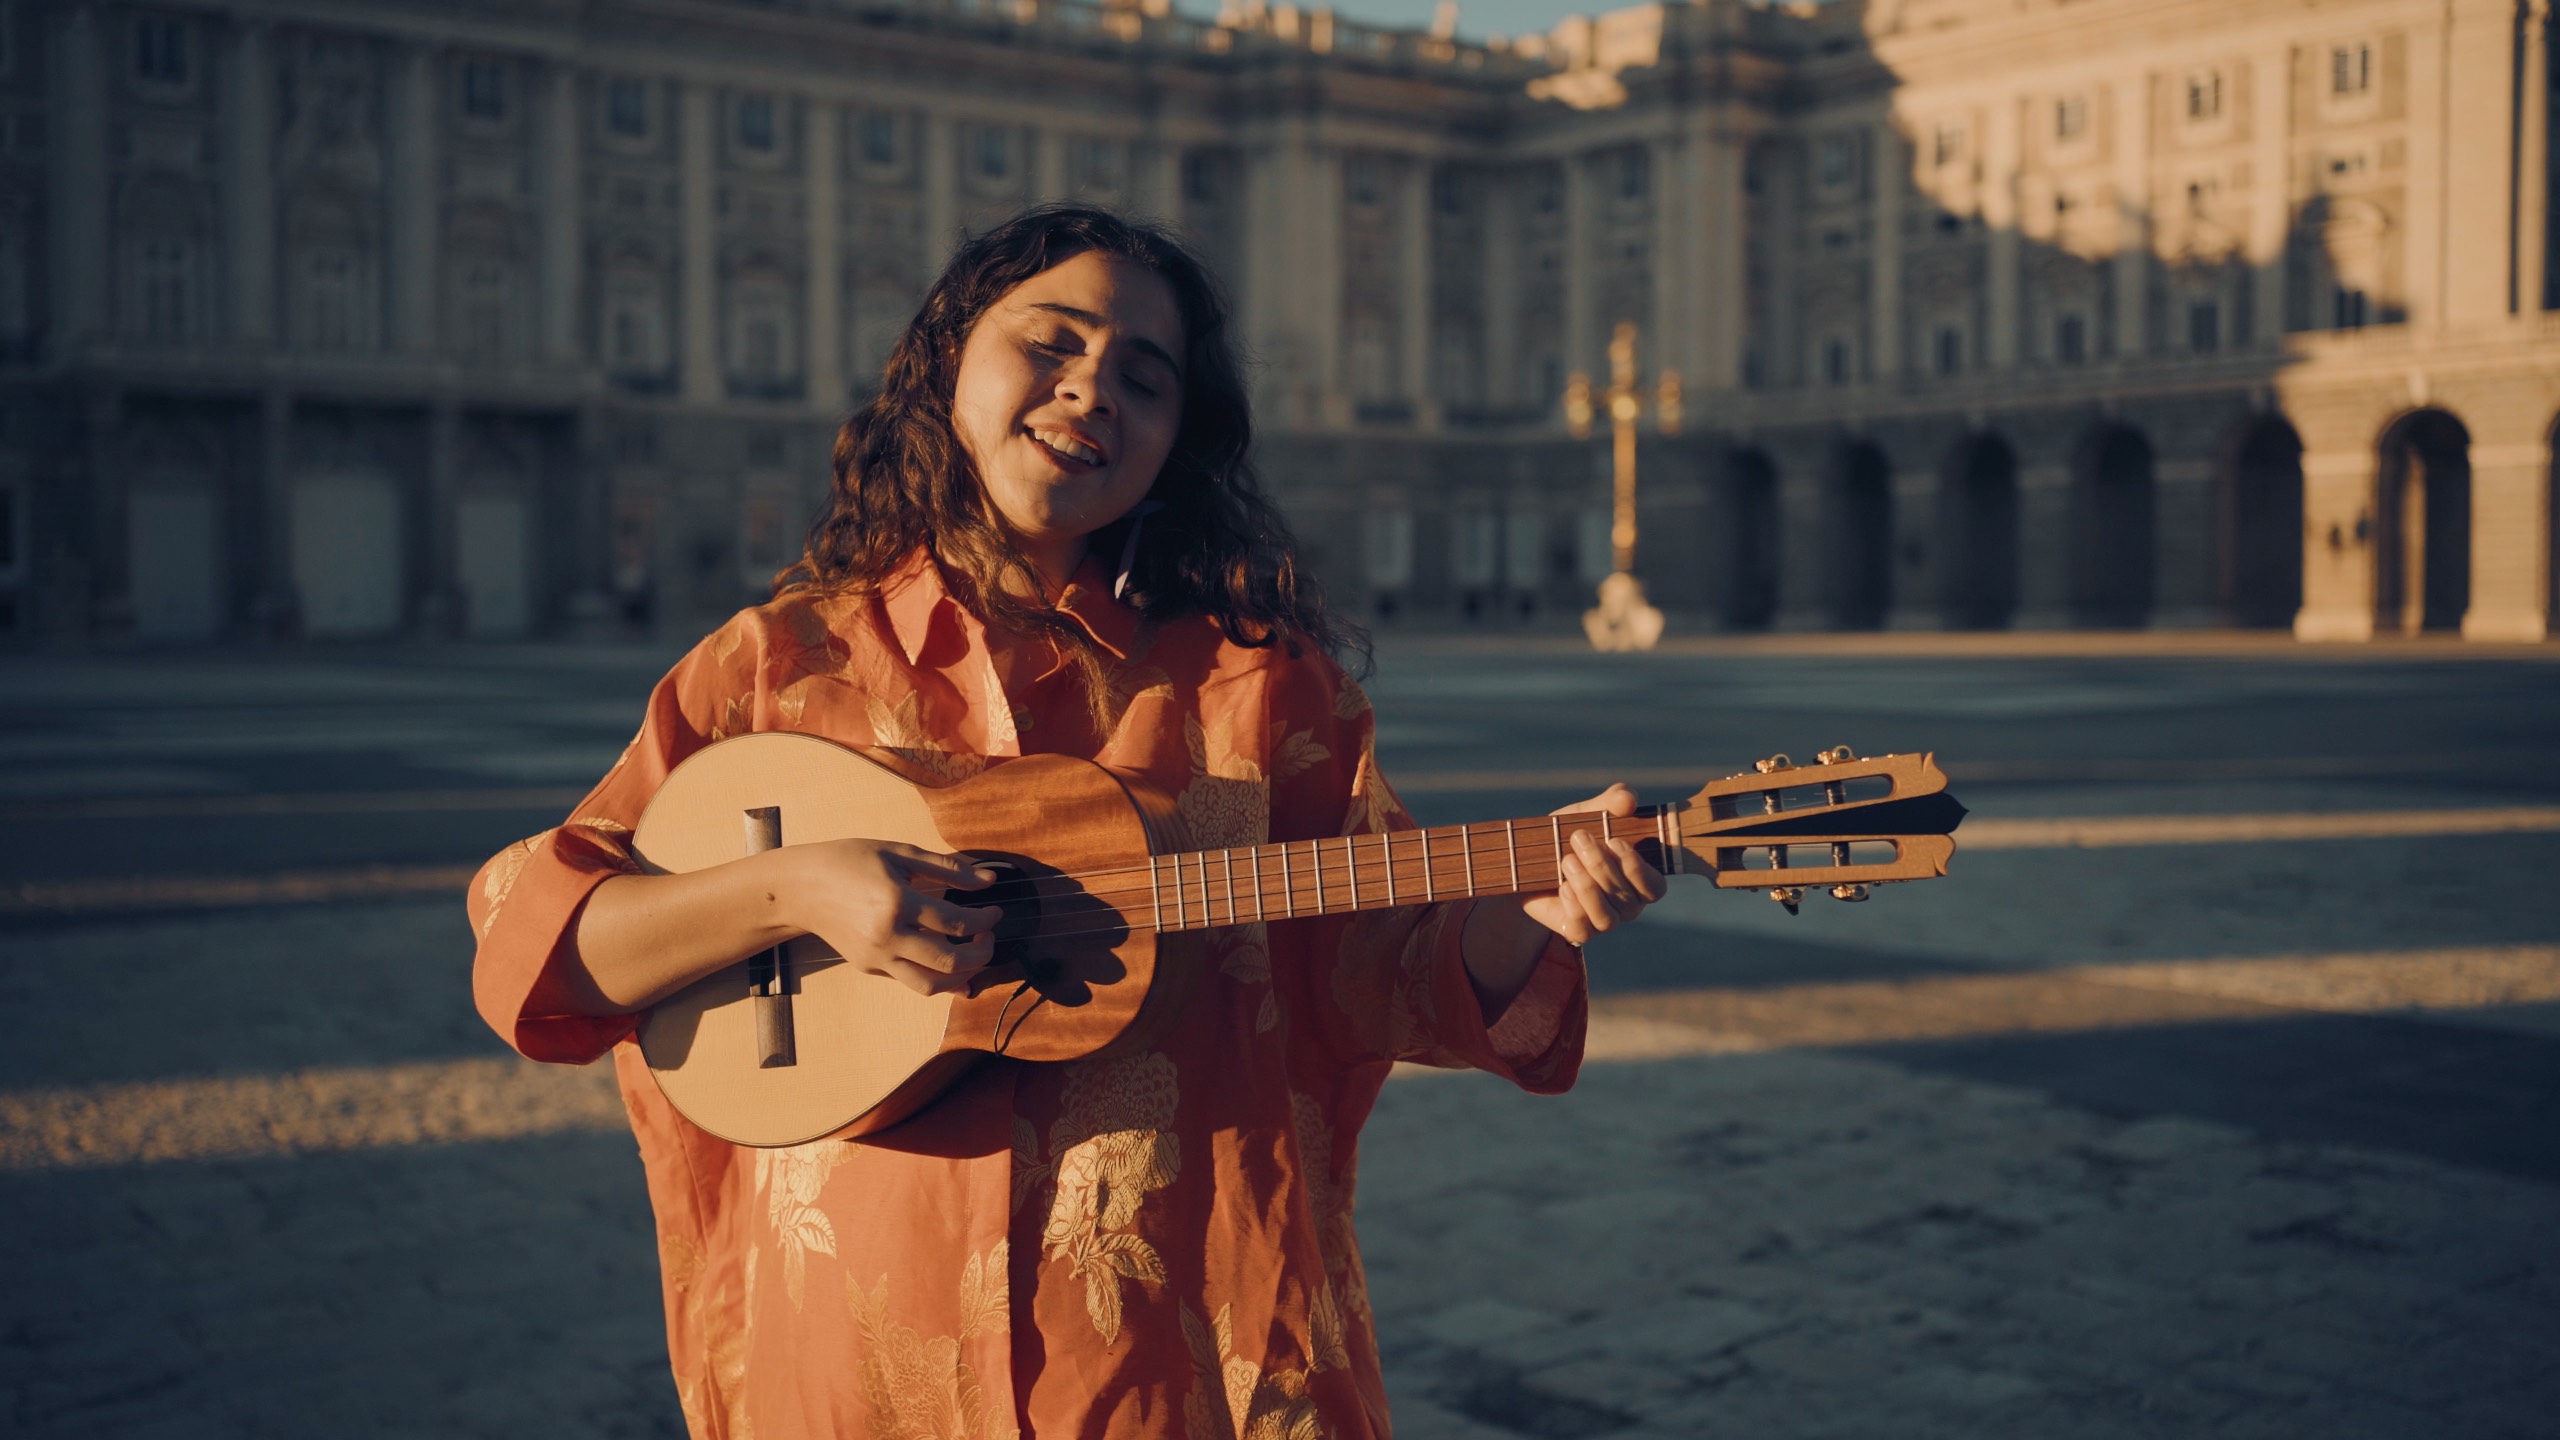 "El gran salto es dejarlo todo por la música": Una entrevista con Silvana Estrada